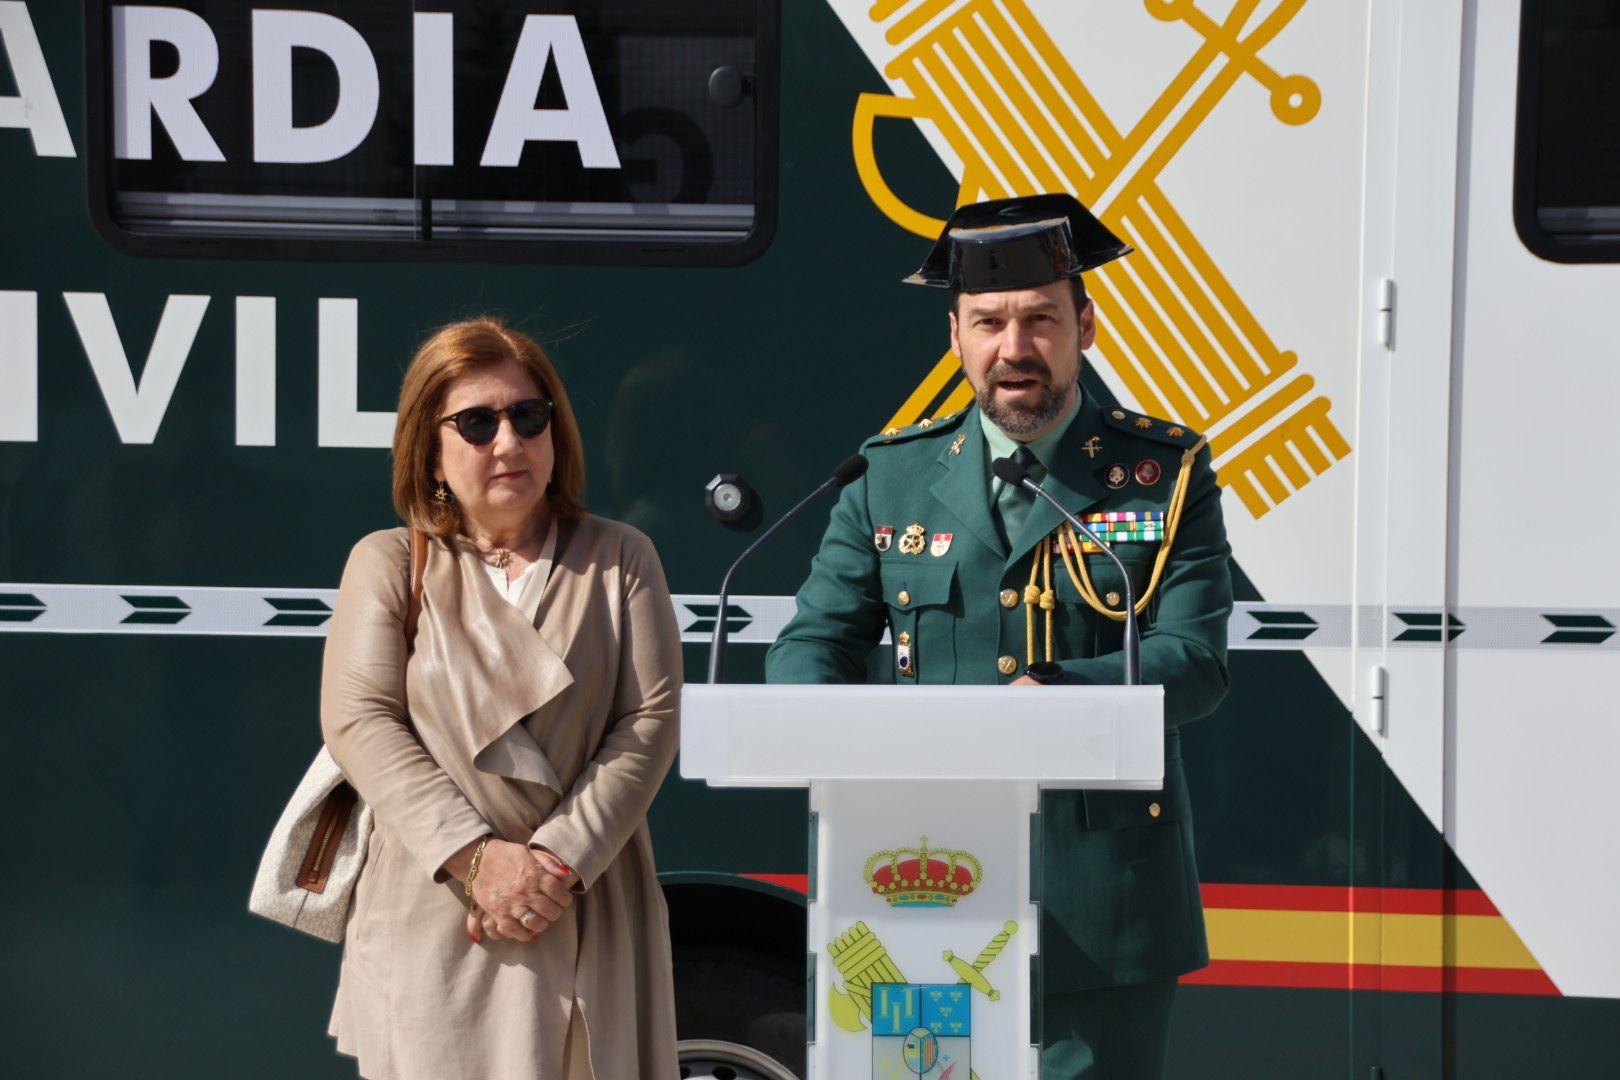 horas.Guardia Civil de Salamanca presenta la nueva oficina móvil de atención a la ciudadanía